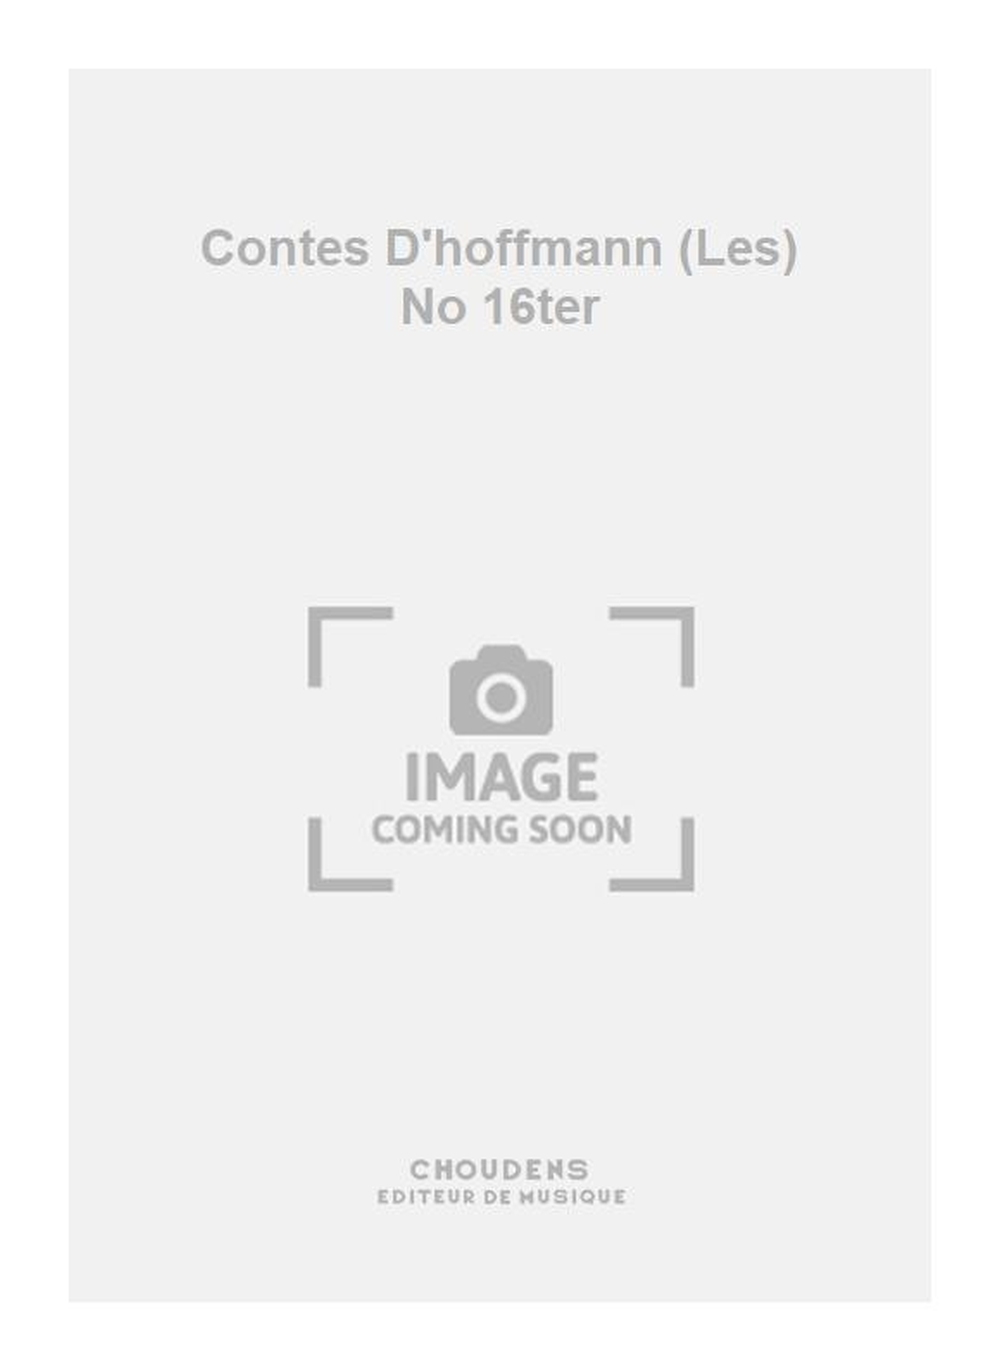 Jacques Offenbach: Contes D'hoffmann (Les) No 16ter